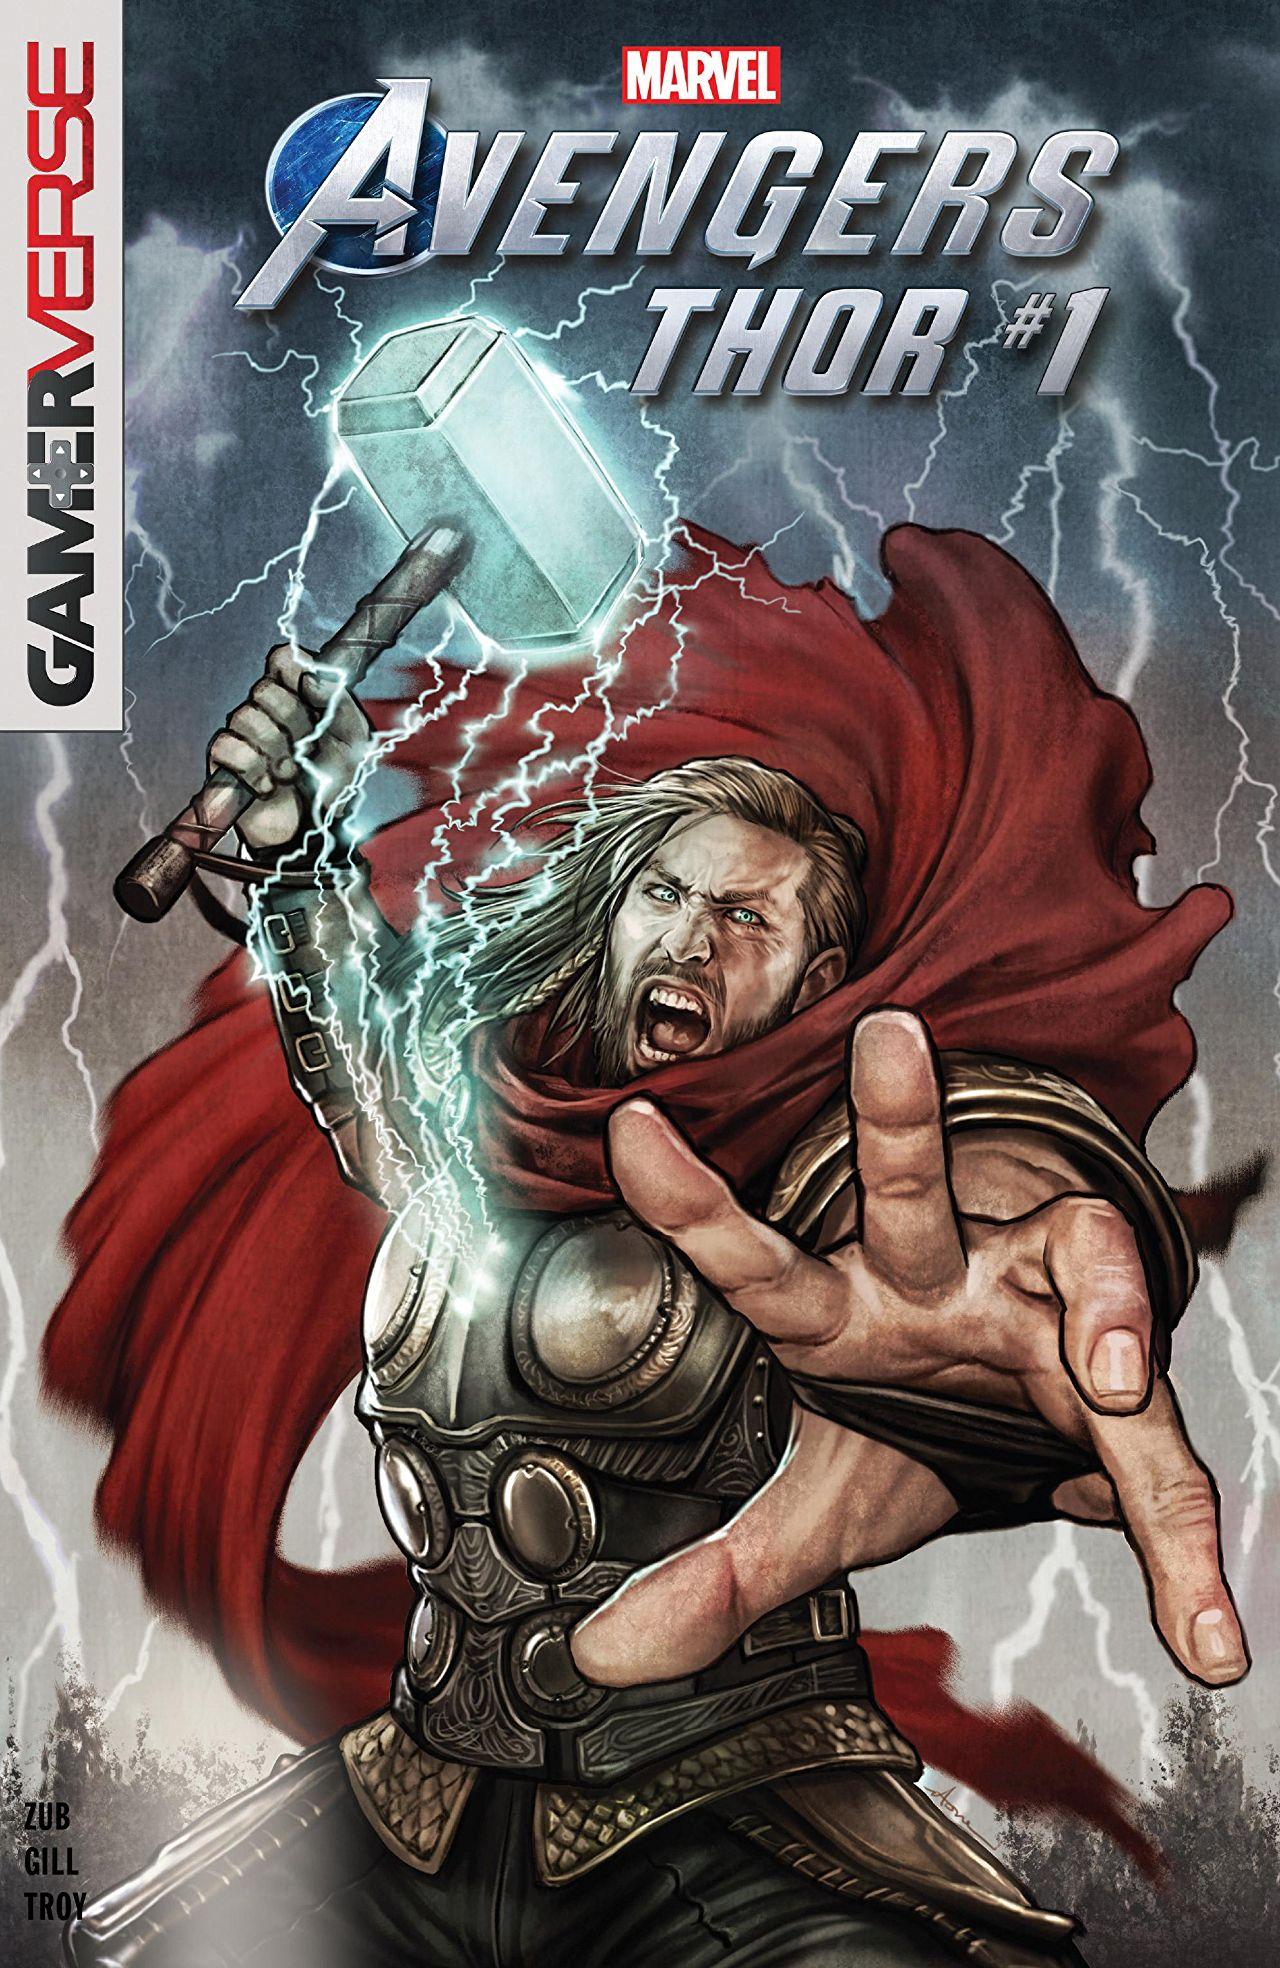 Marvel's Avengers: Thor Vol. 1 #1